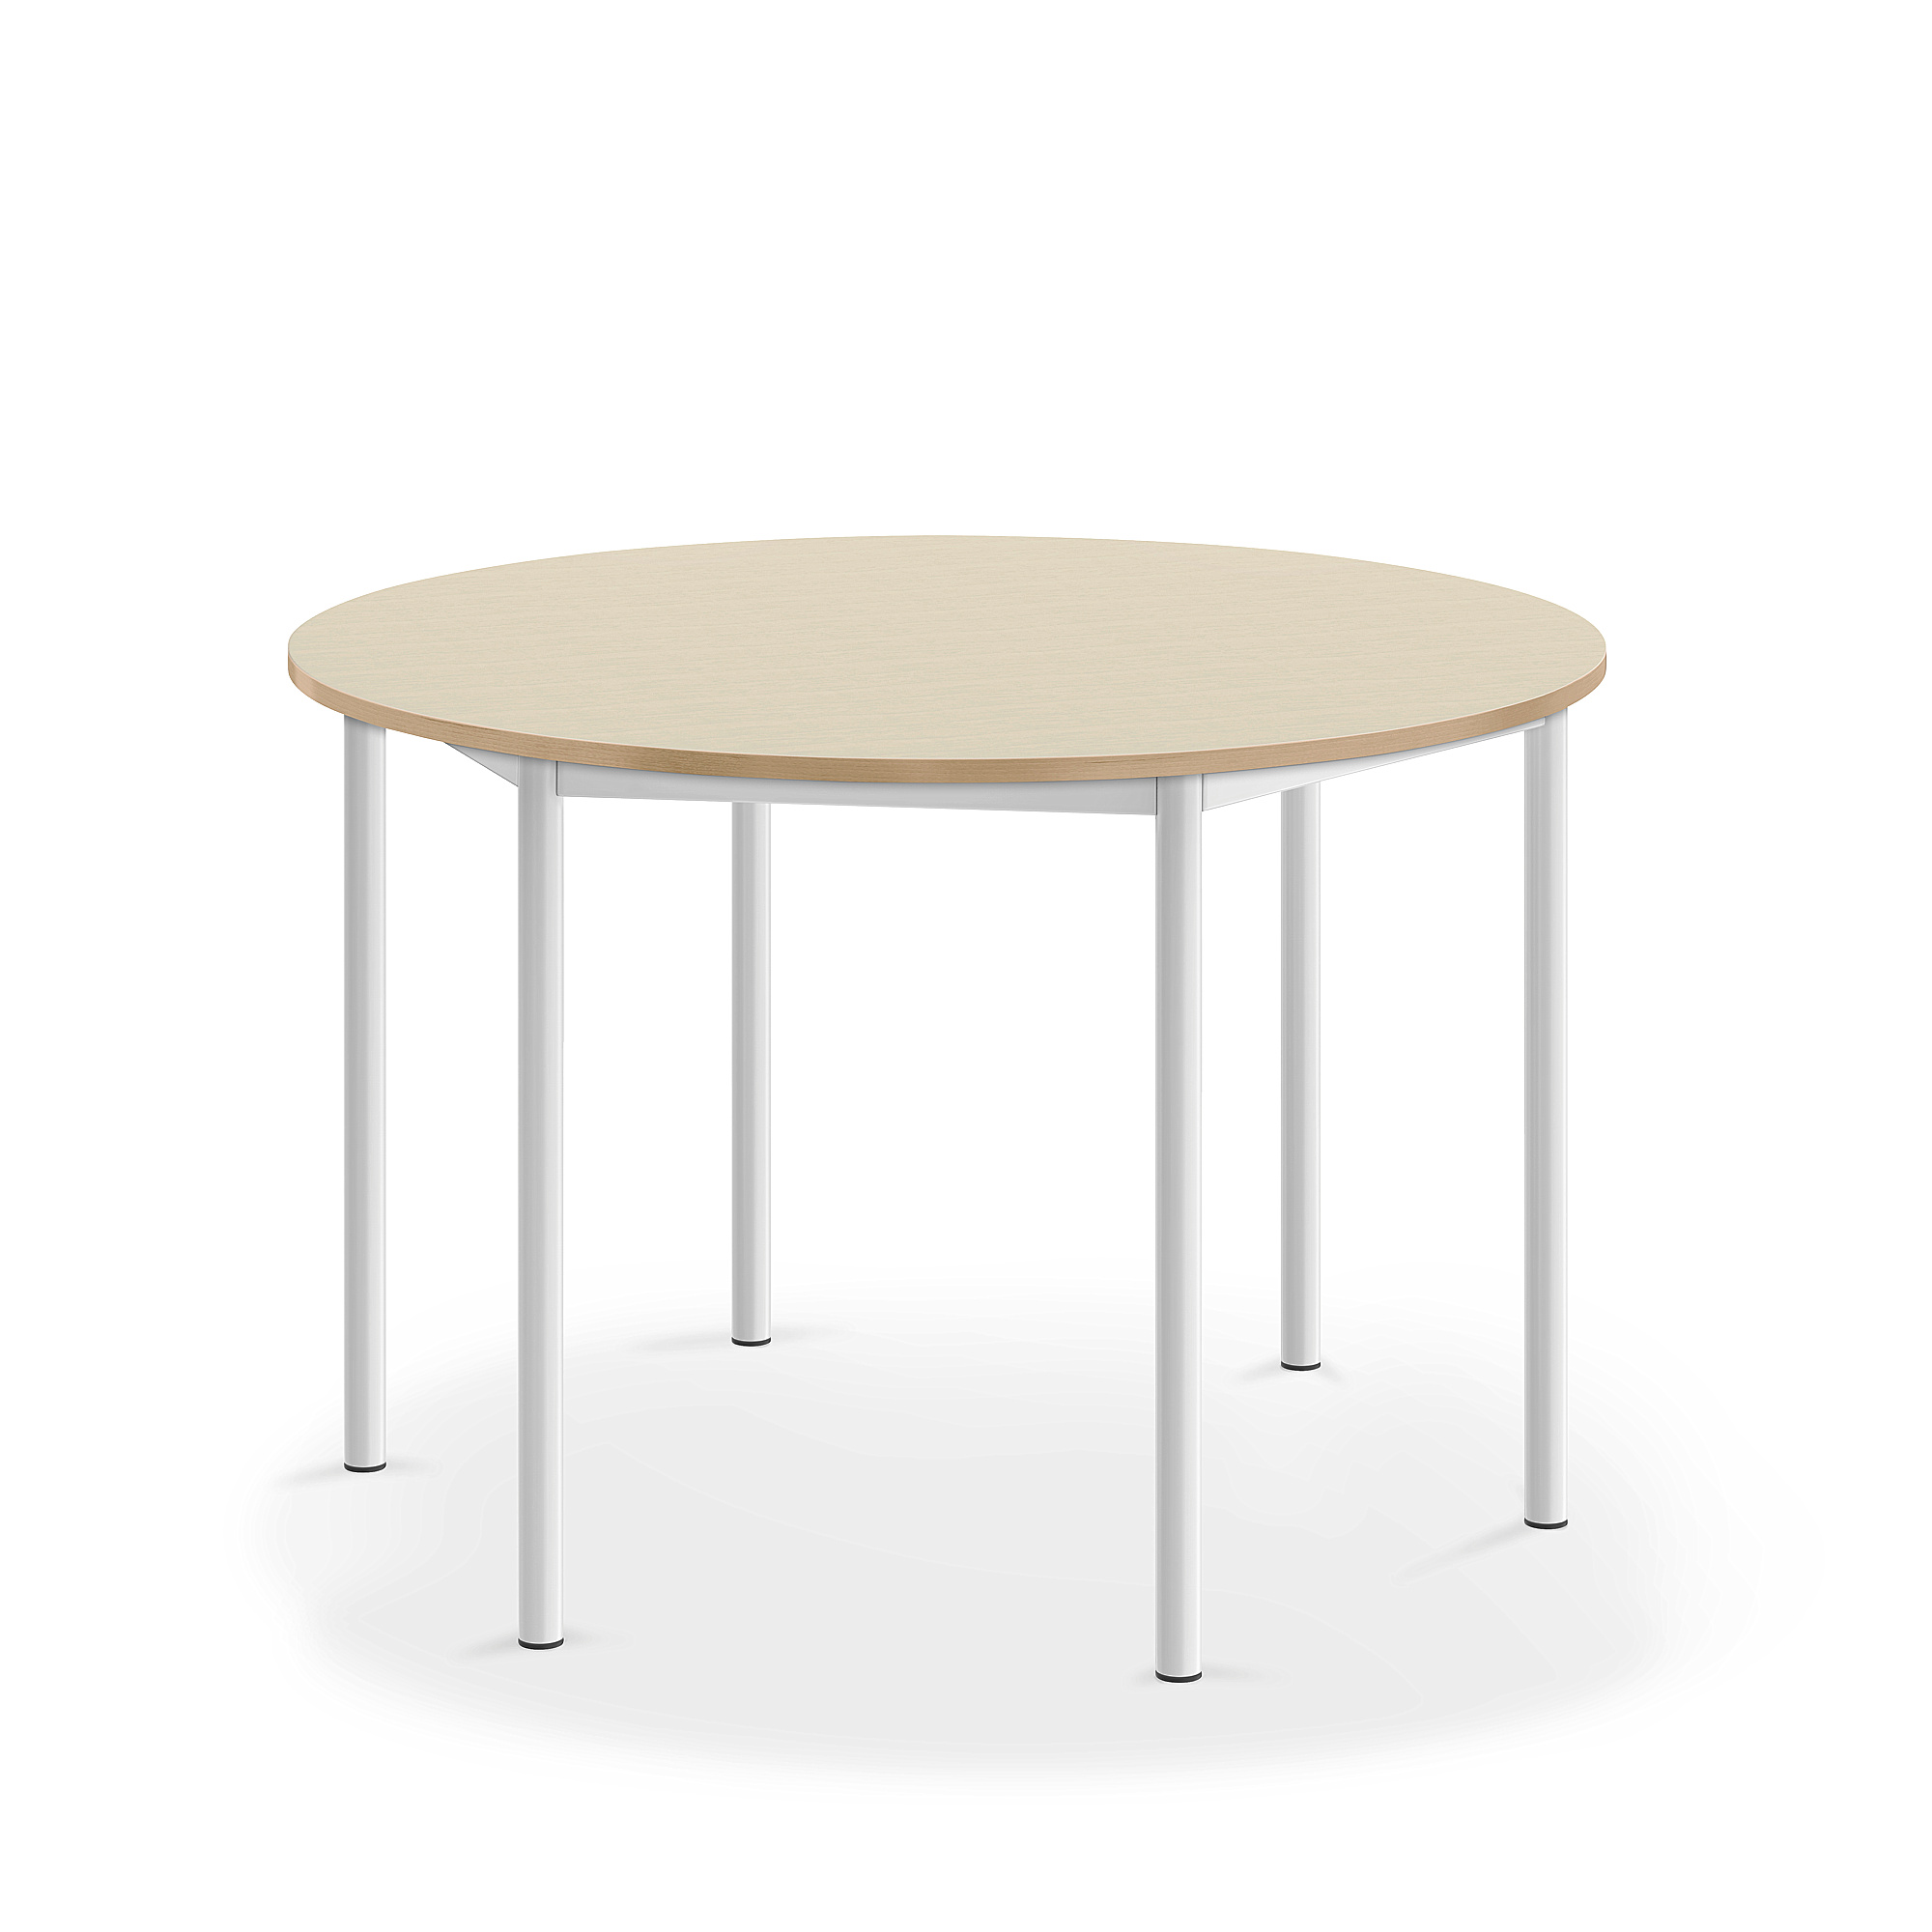 Stůl BORÅS, Ø1200x760 mm, bílé nohy, HPL deska, bříza